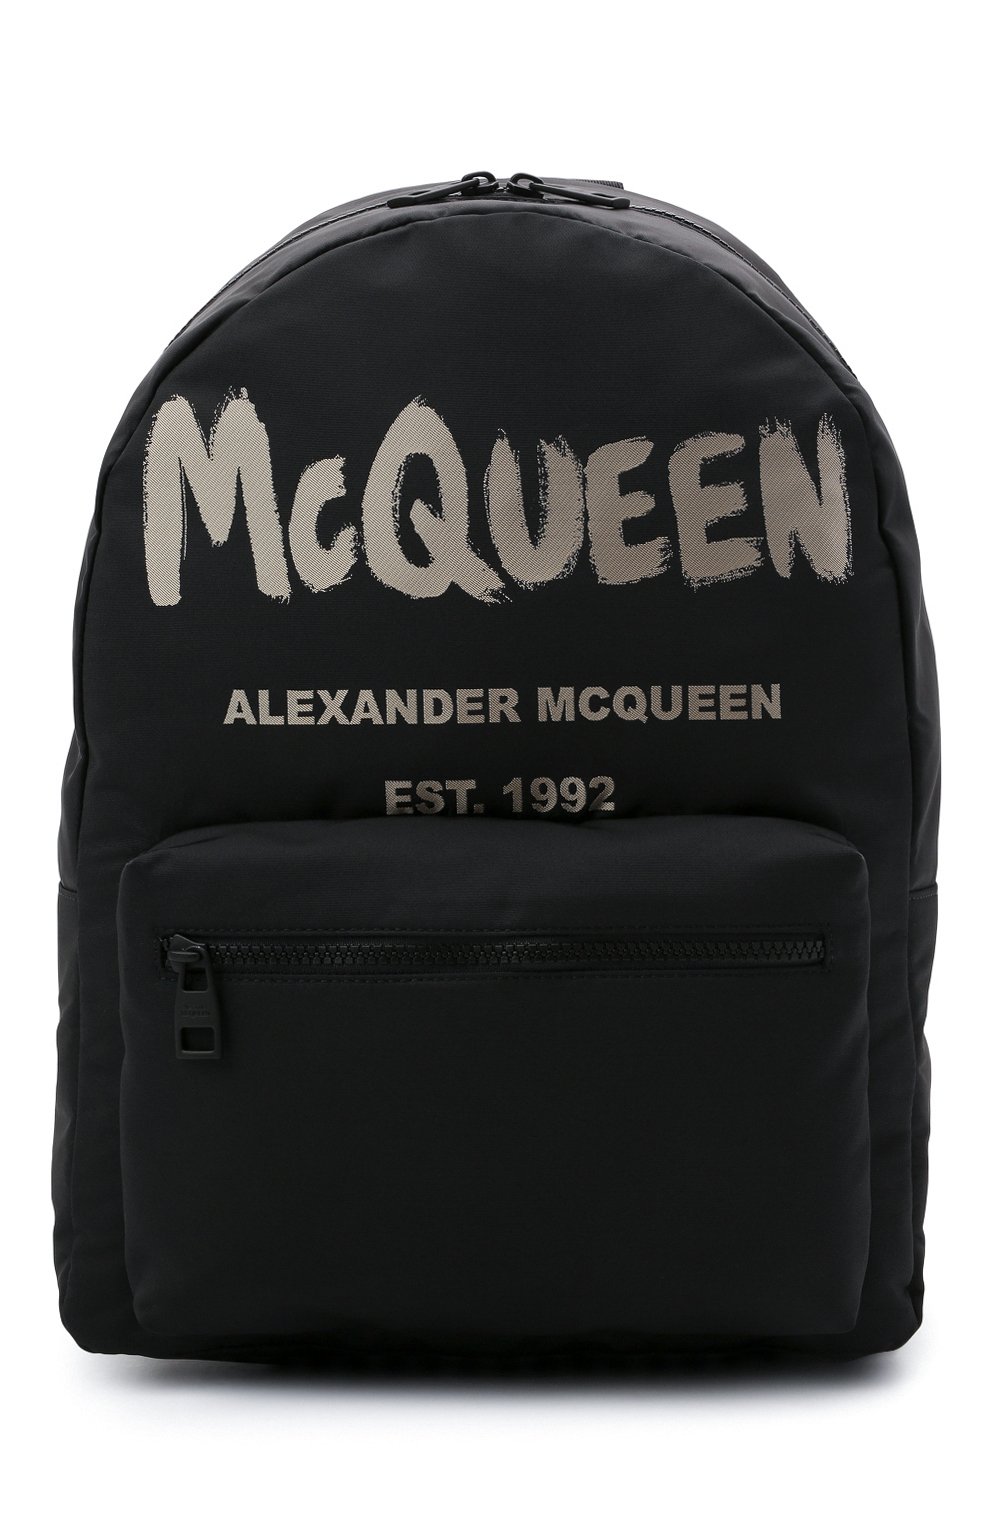 Рюкзаки Alexander McQueen, Текстильный рюкзак Alexander McQueen, Италия, Чёрный, Текстиль: 100%;, 12060833  - купить